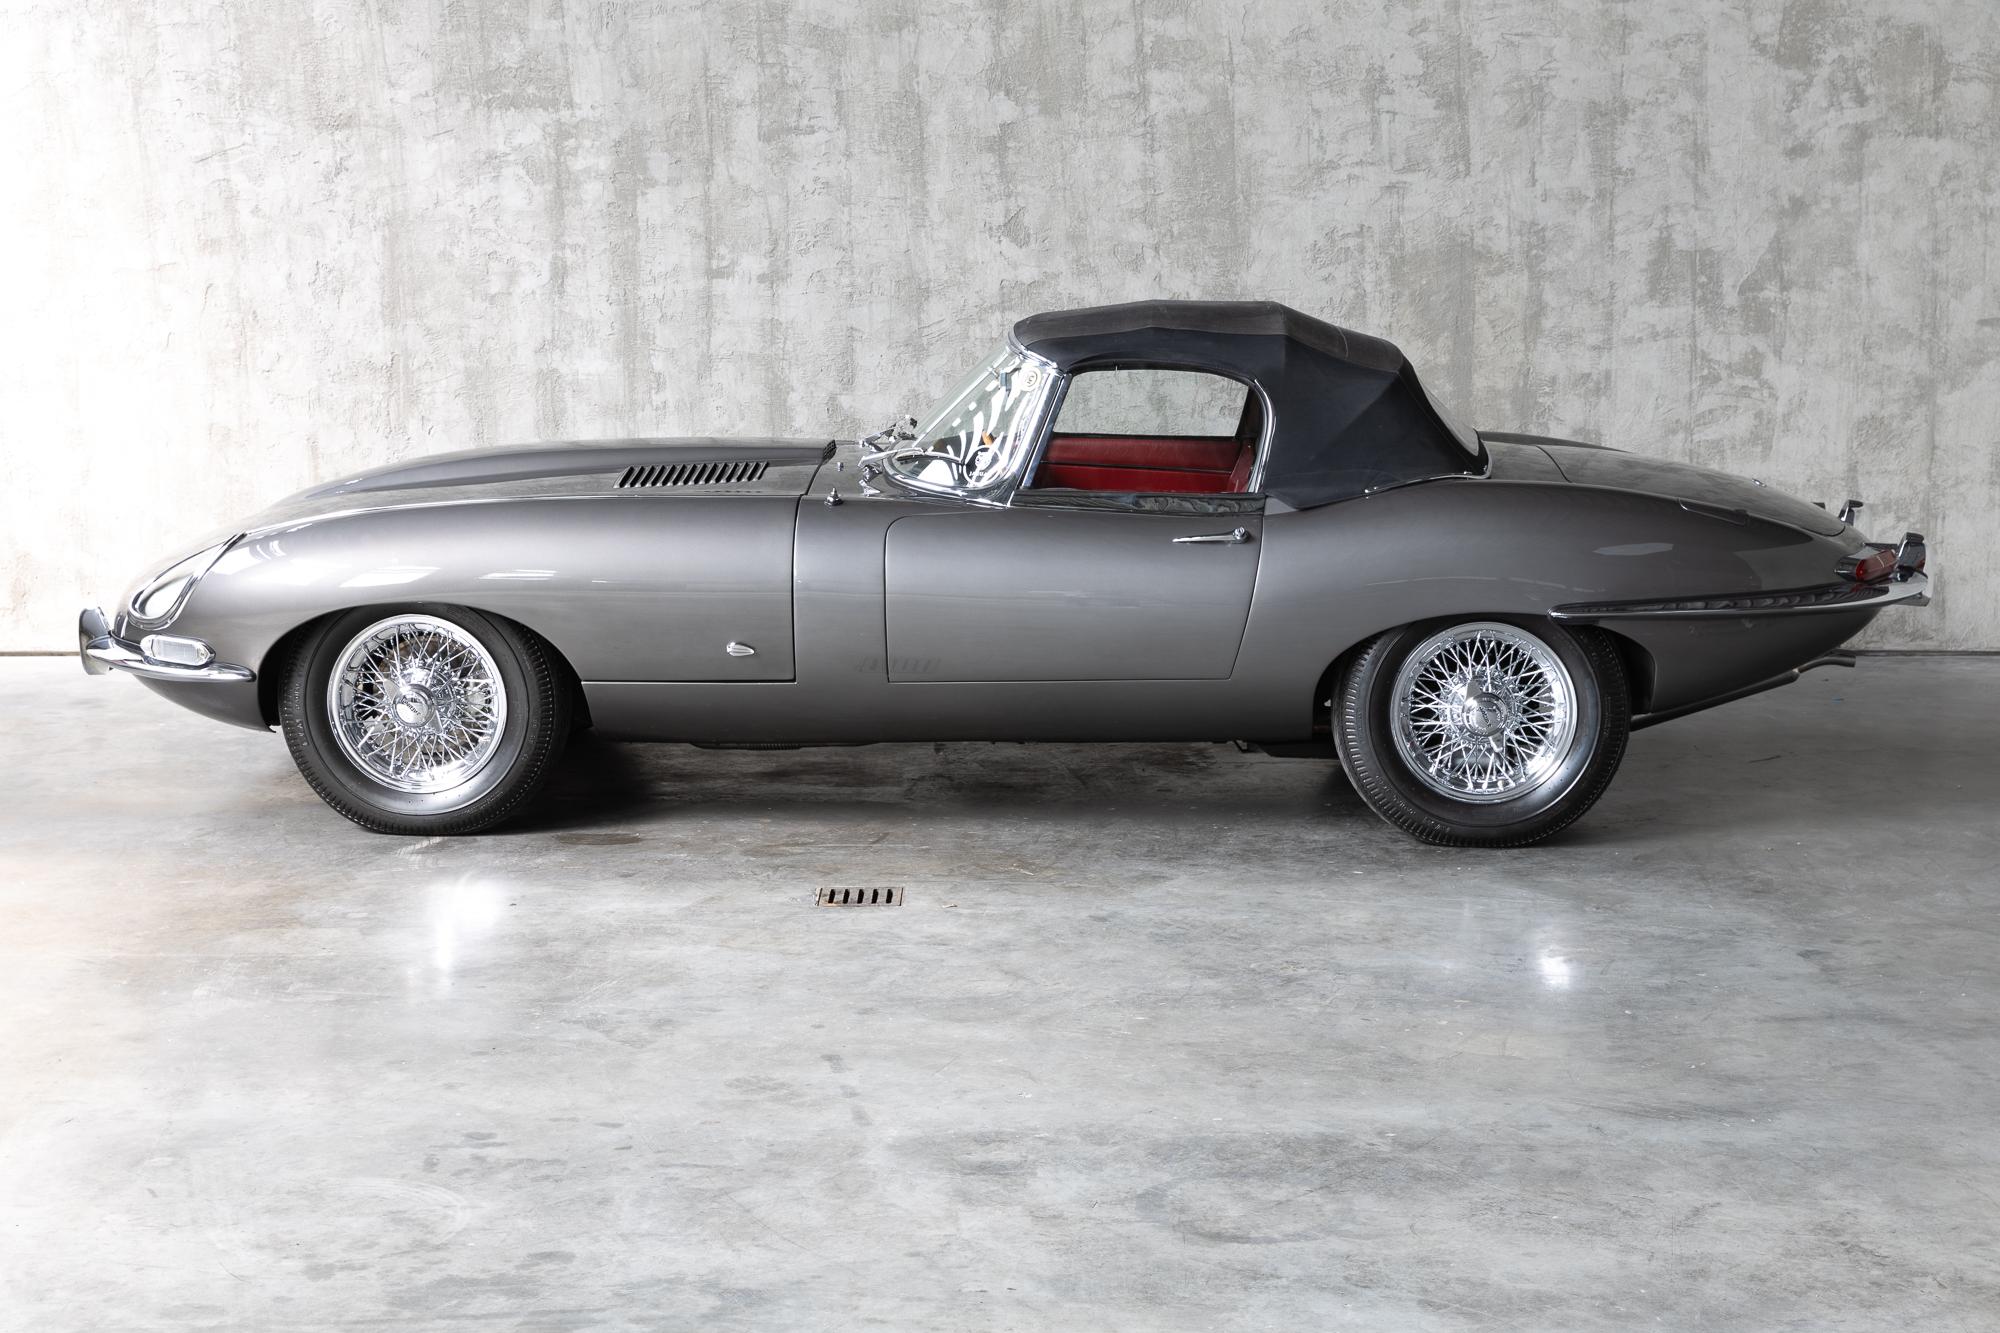 1961-Jaguar-EType-OBL-for-sale-DriveCity-Sales-72dpi-13